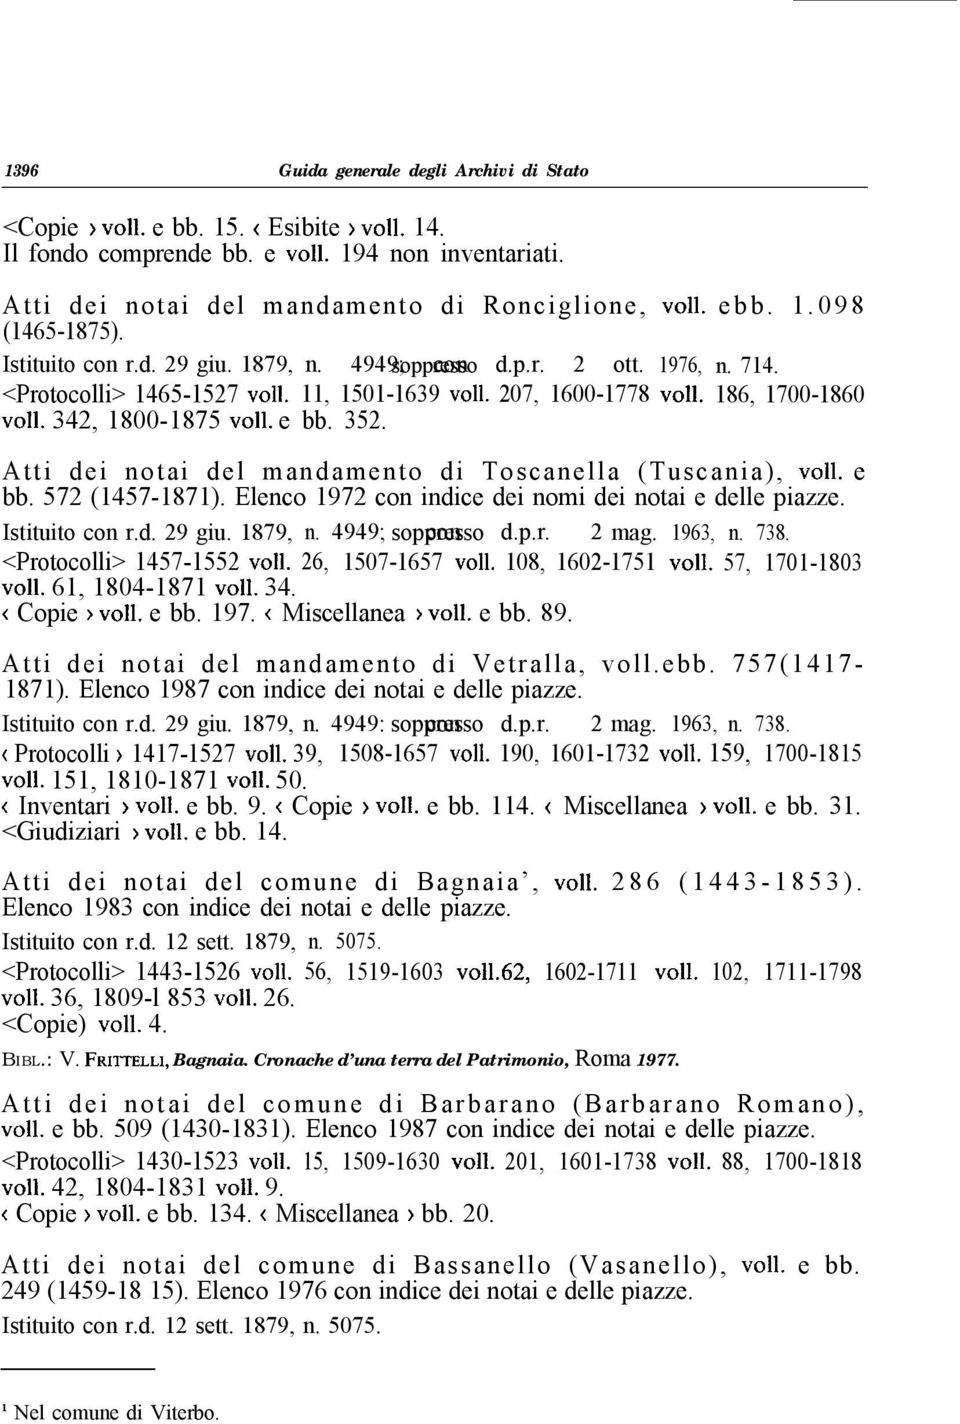 342, 1800-1875 ~011. e bb. 352. Atti dei notai del mandamento di Toscanella (Tuscania), ~011. e bb. 572 (1457-1871). Elenco 1972 con indice dei nomi dei notai e delle piazze. Istituito con r.d. 29 giu.